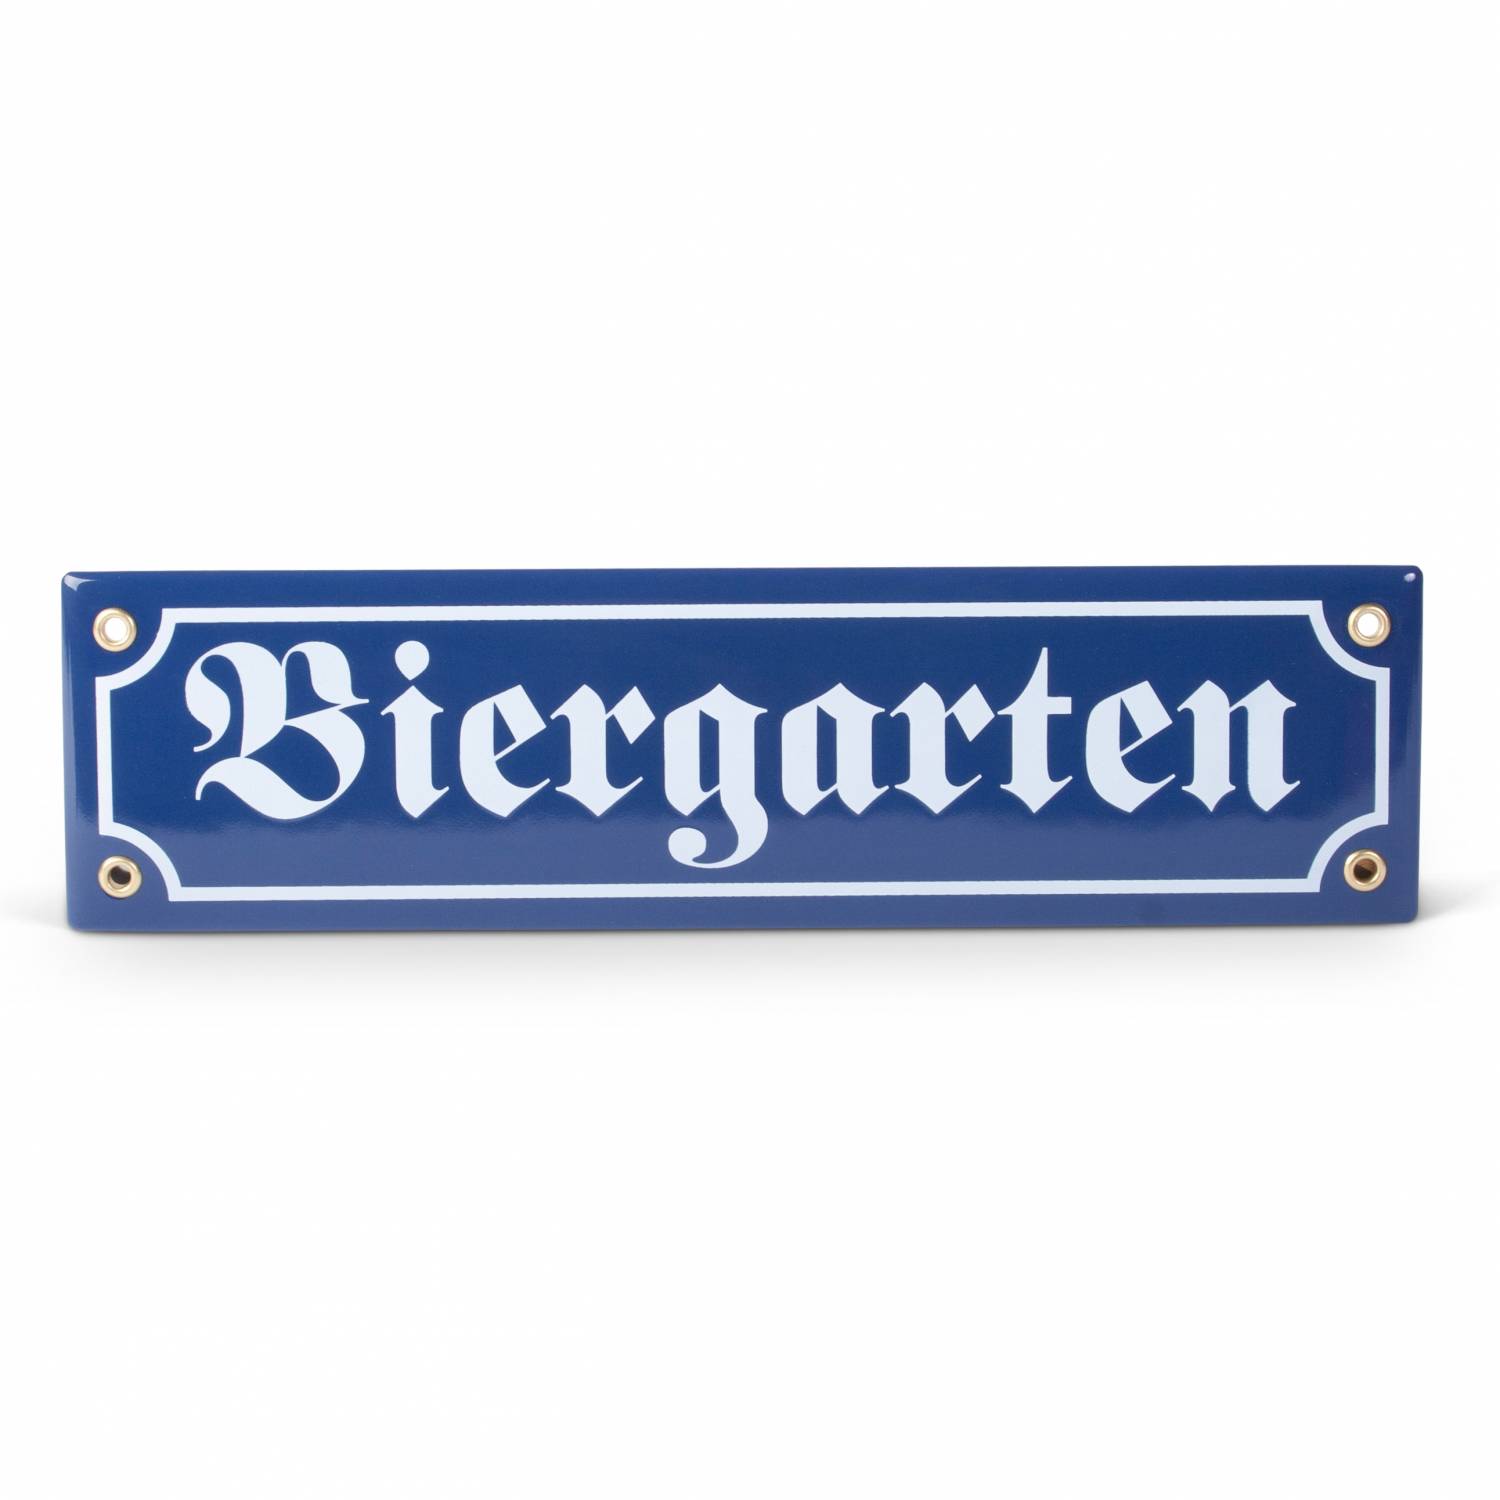 Dekoration für Haus Straßenschildoptik Garten Partykeller Bavariashop Emaille-Schild Biergarten Blau Weiß